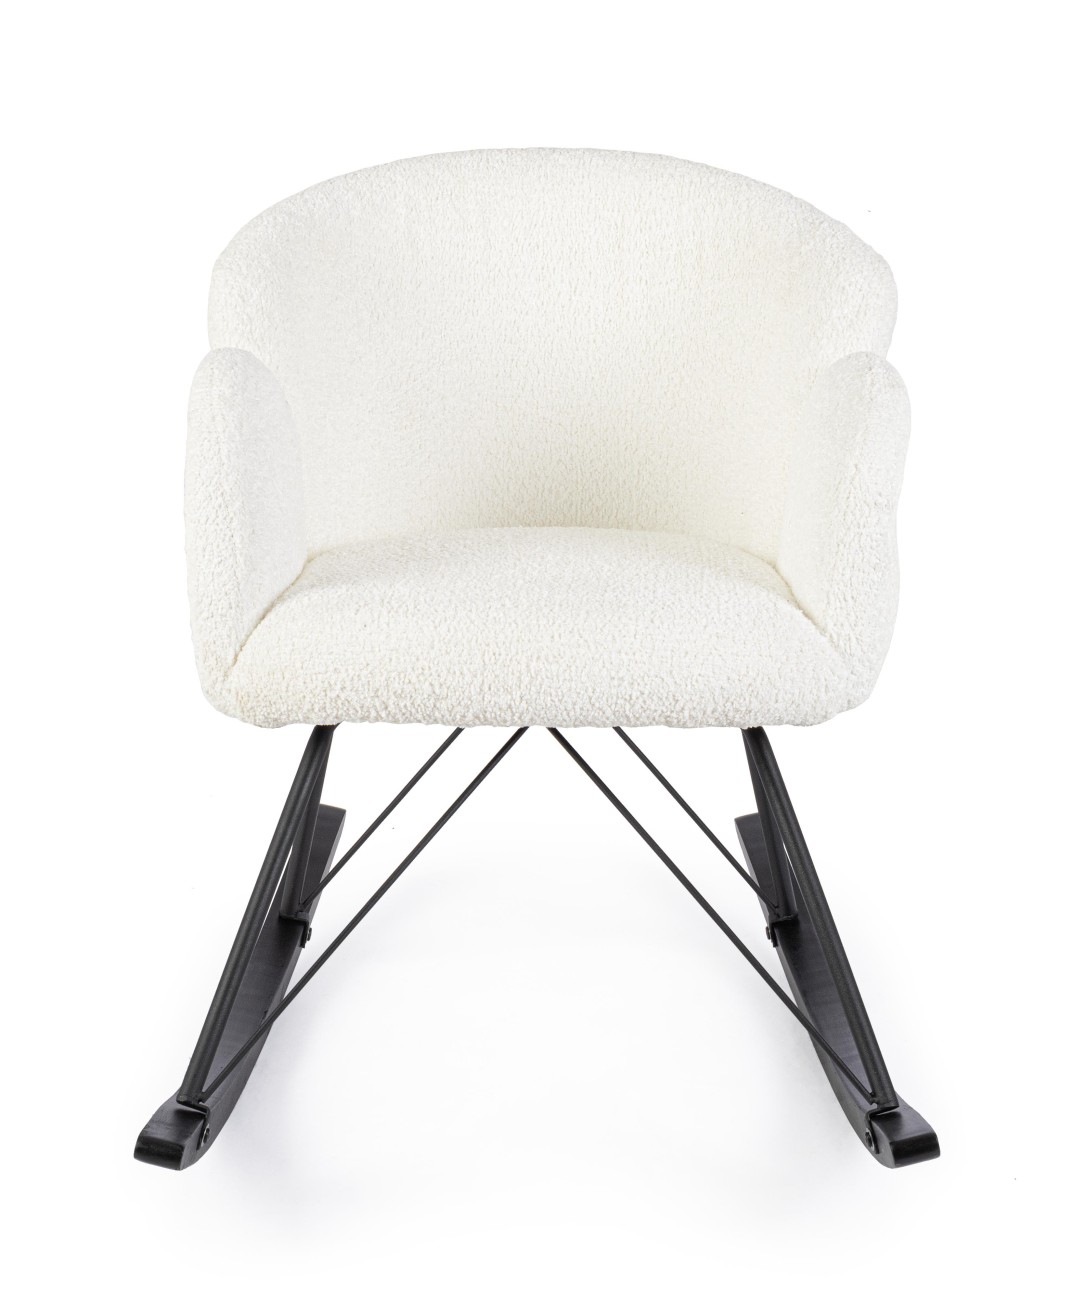 Der Schaukelsessel Sibilla überzeugt mit seinem modernen Stil. Gefertigt wurde er aus Stoff, welcher einen weißen Farbton besitzt. Das Gestell ist aus Metall und hat eine schwarze Farbe. Der Sessel besitzt eine Sitzhöhe von 48 cm.